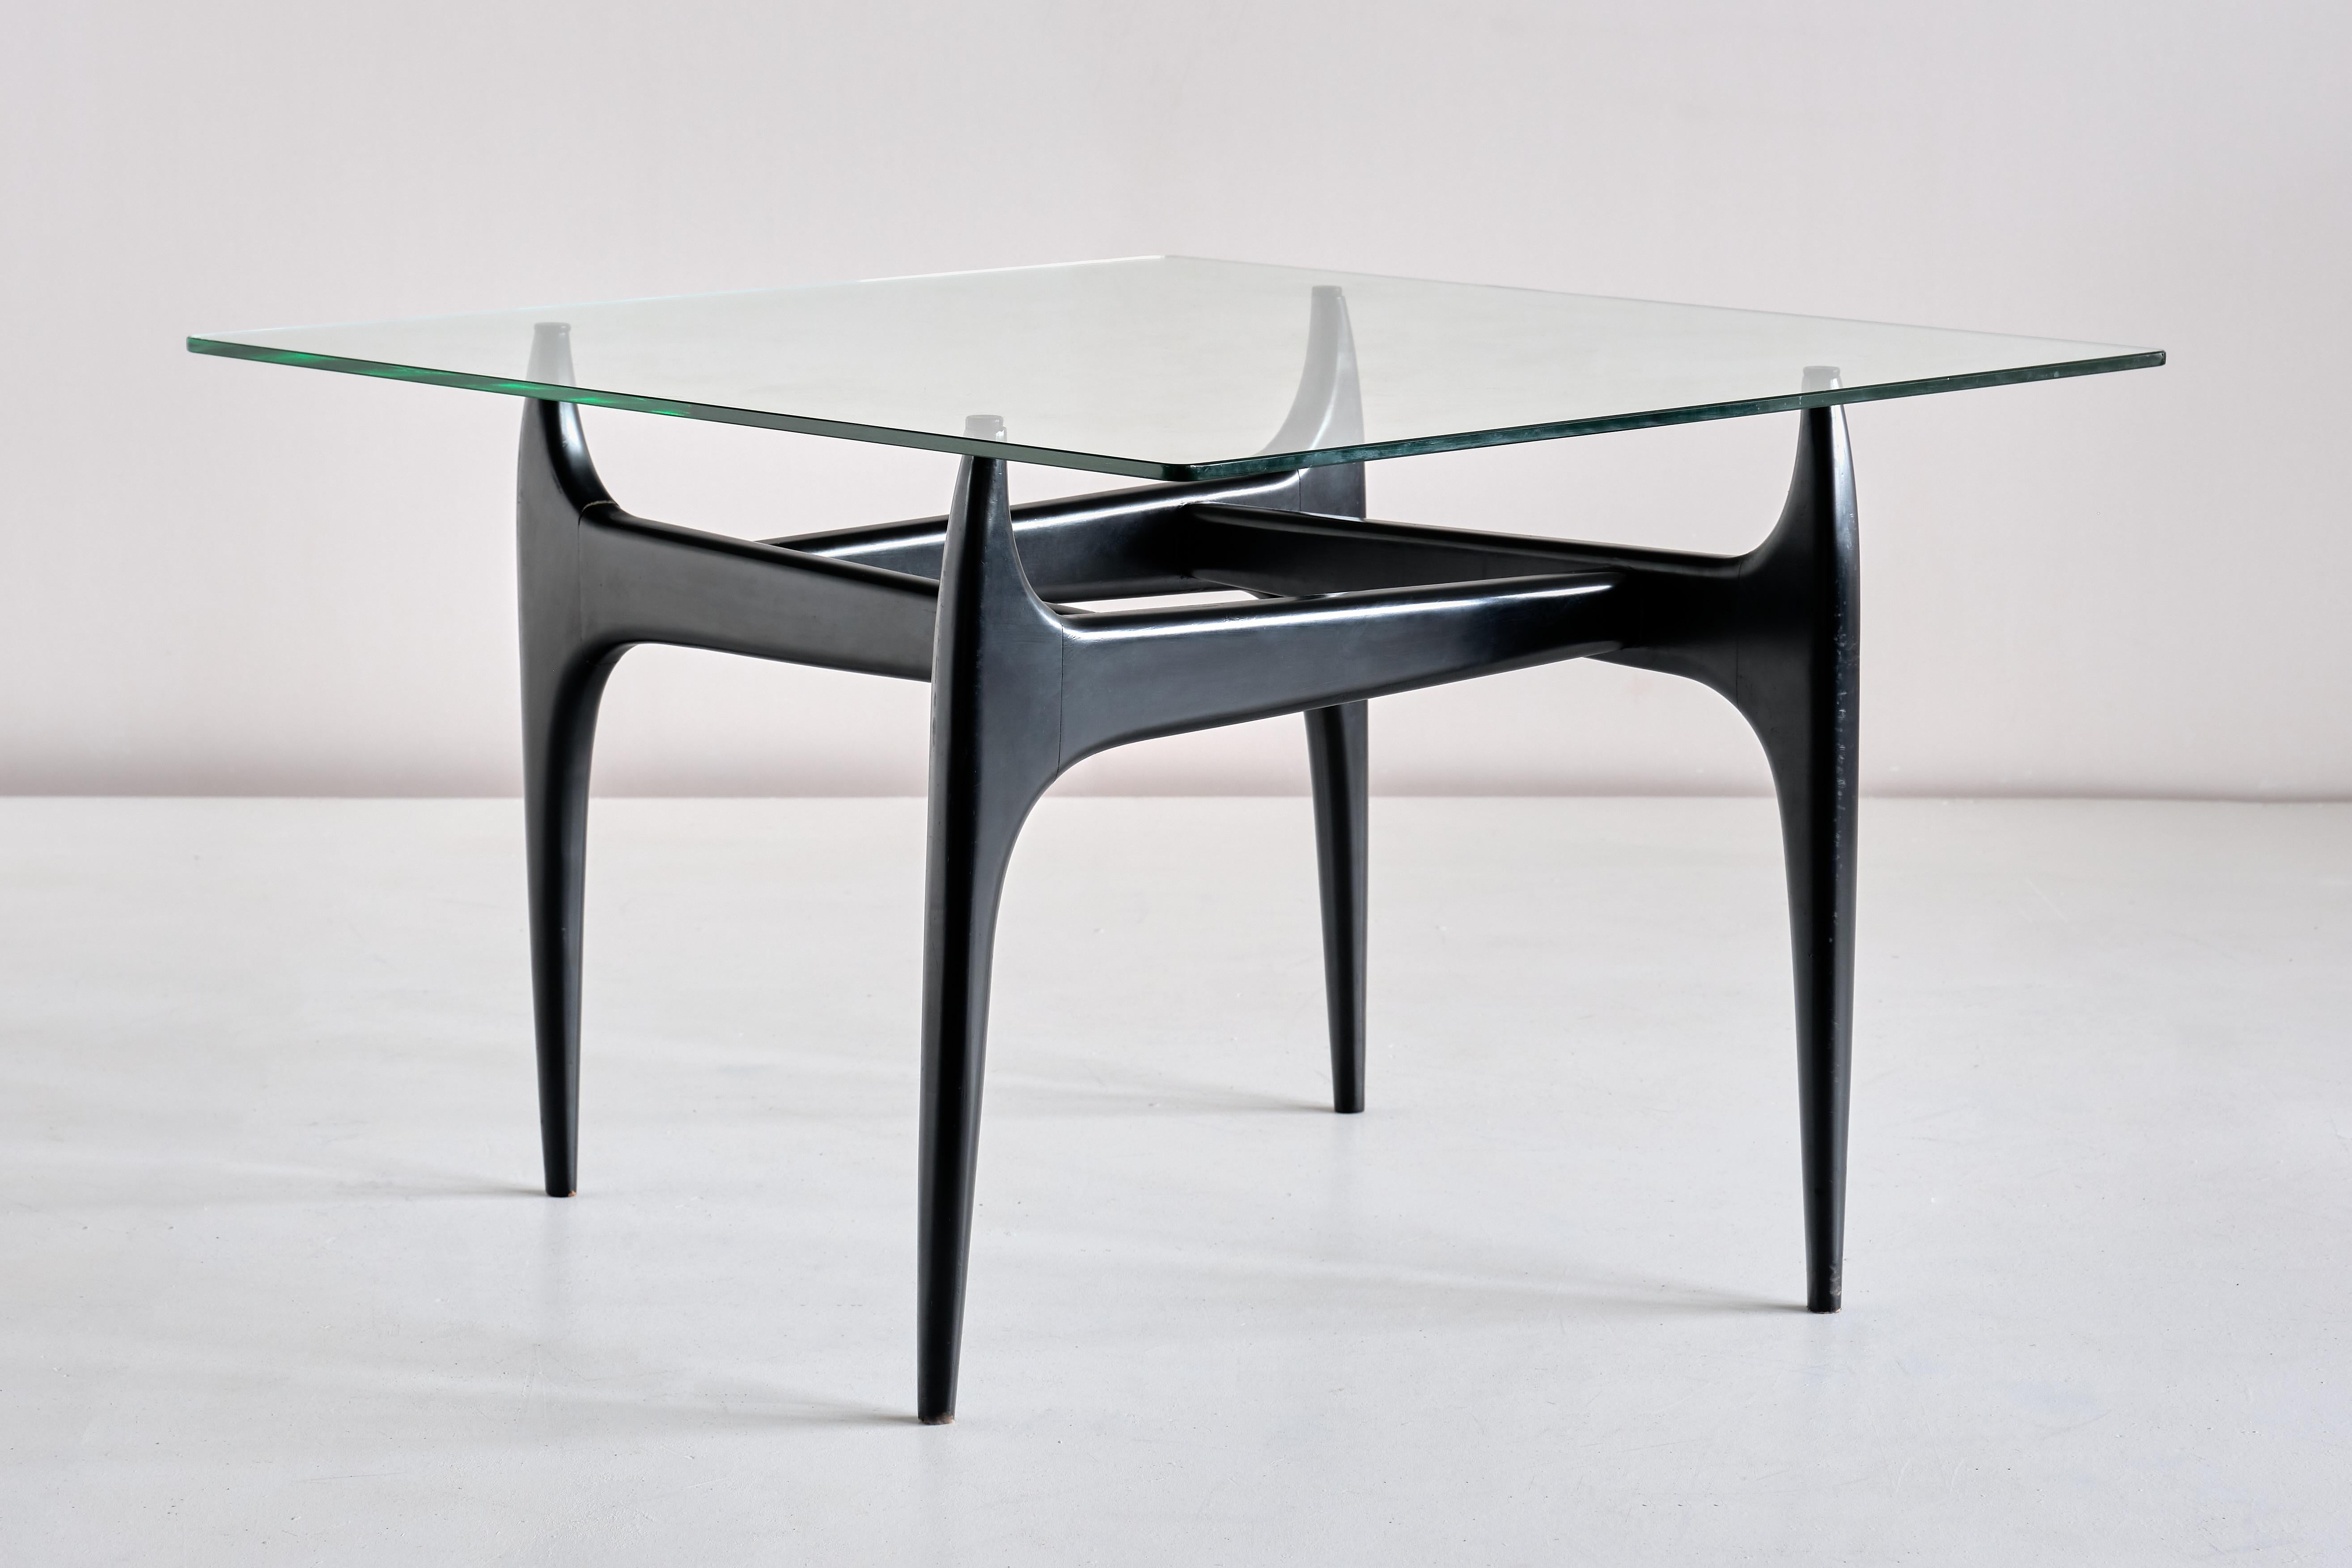 Cette table basse très rare a été conçue par Jos De Mey et produite par la société Luxus à Courtrai, en Belgique, en 1957. L'élégante base est en bois laqué noir, avec un plateau en verre carré reposant sur des capuchons en caoutchouc. Un design